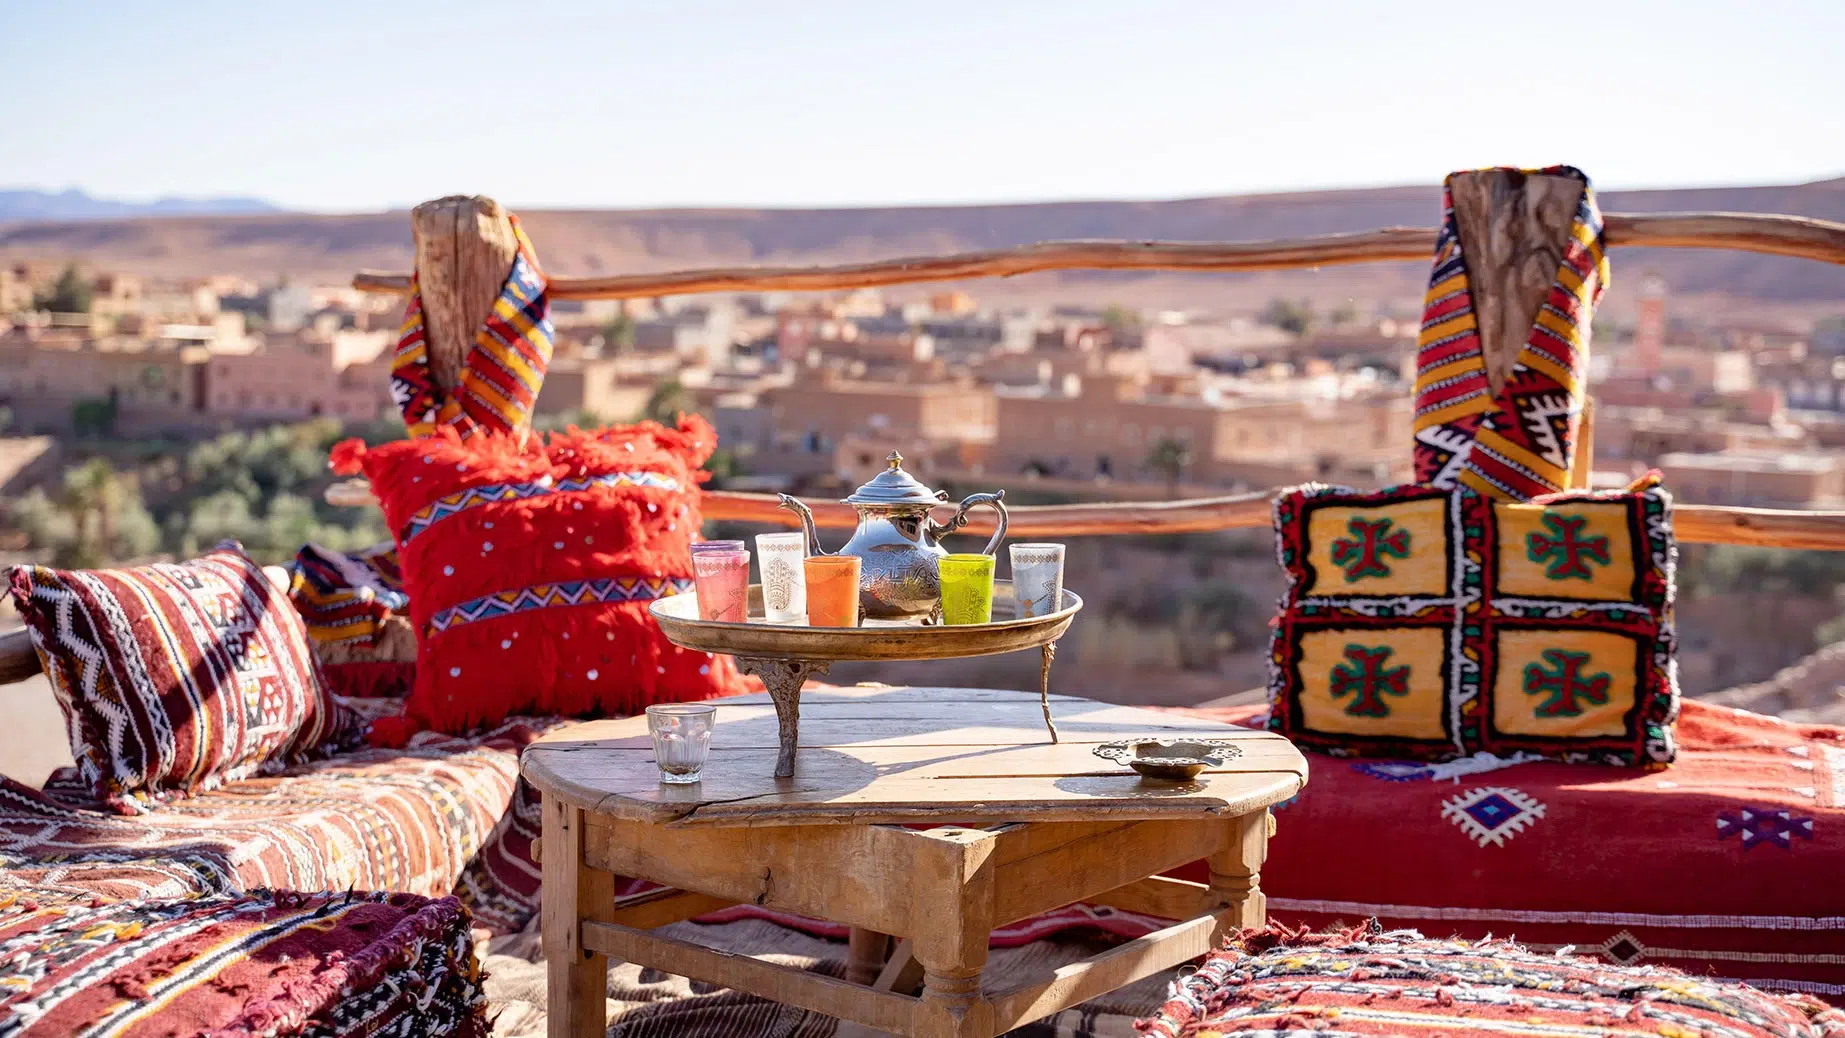 المغرب يتصدر قائمة الدول الإفريقية والعربية الأكثر بحثا على الإنترنيت بغرض السياحة